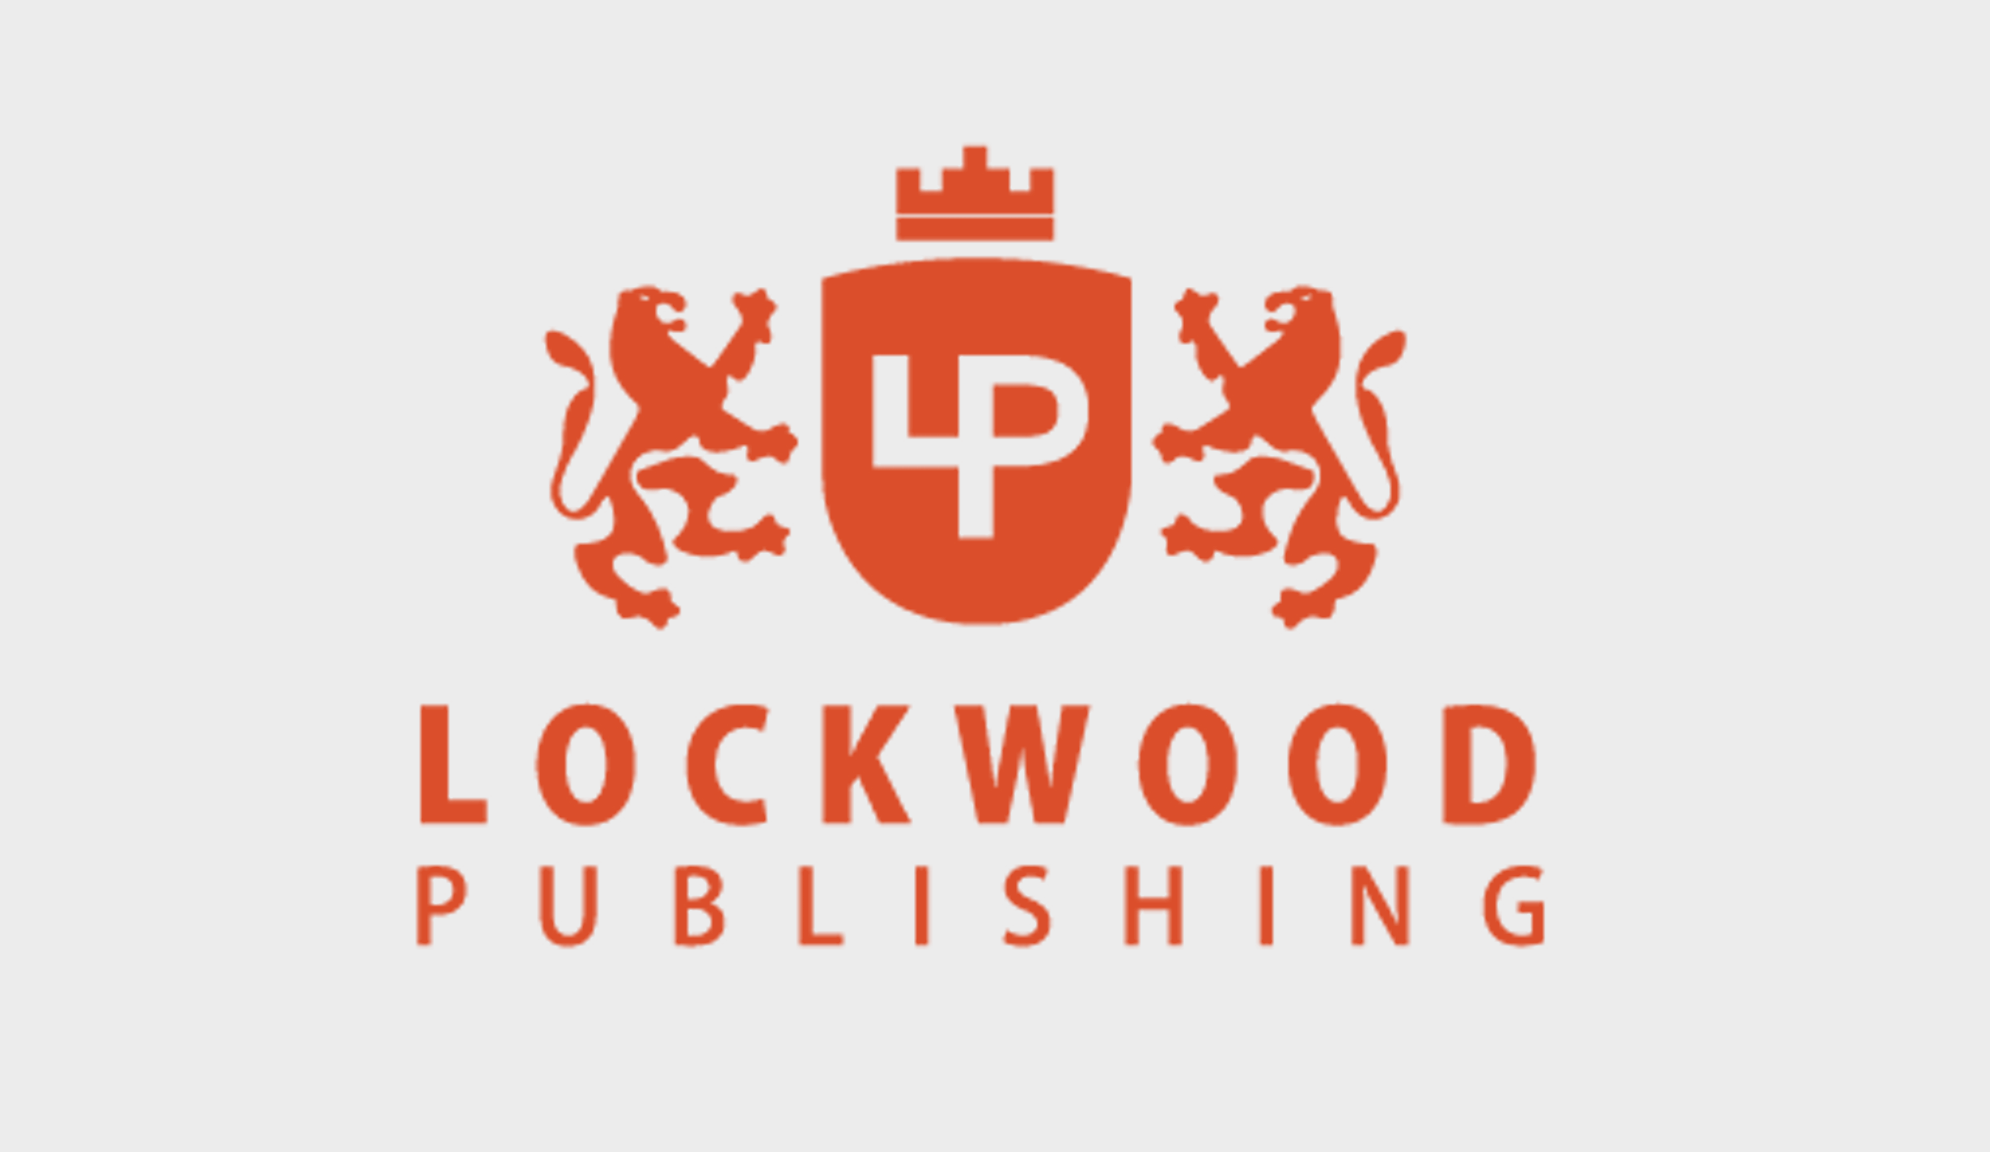 Desenvolvedora móvel do Reino Unido, Lockwood Publishing, expande-se para Portugal – Business News